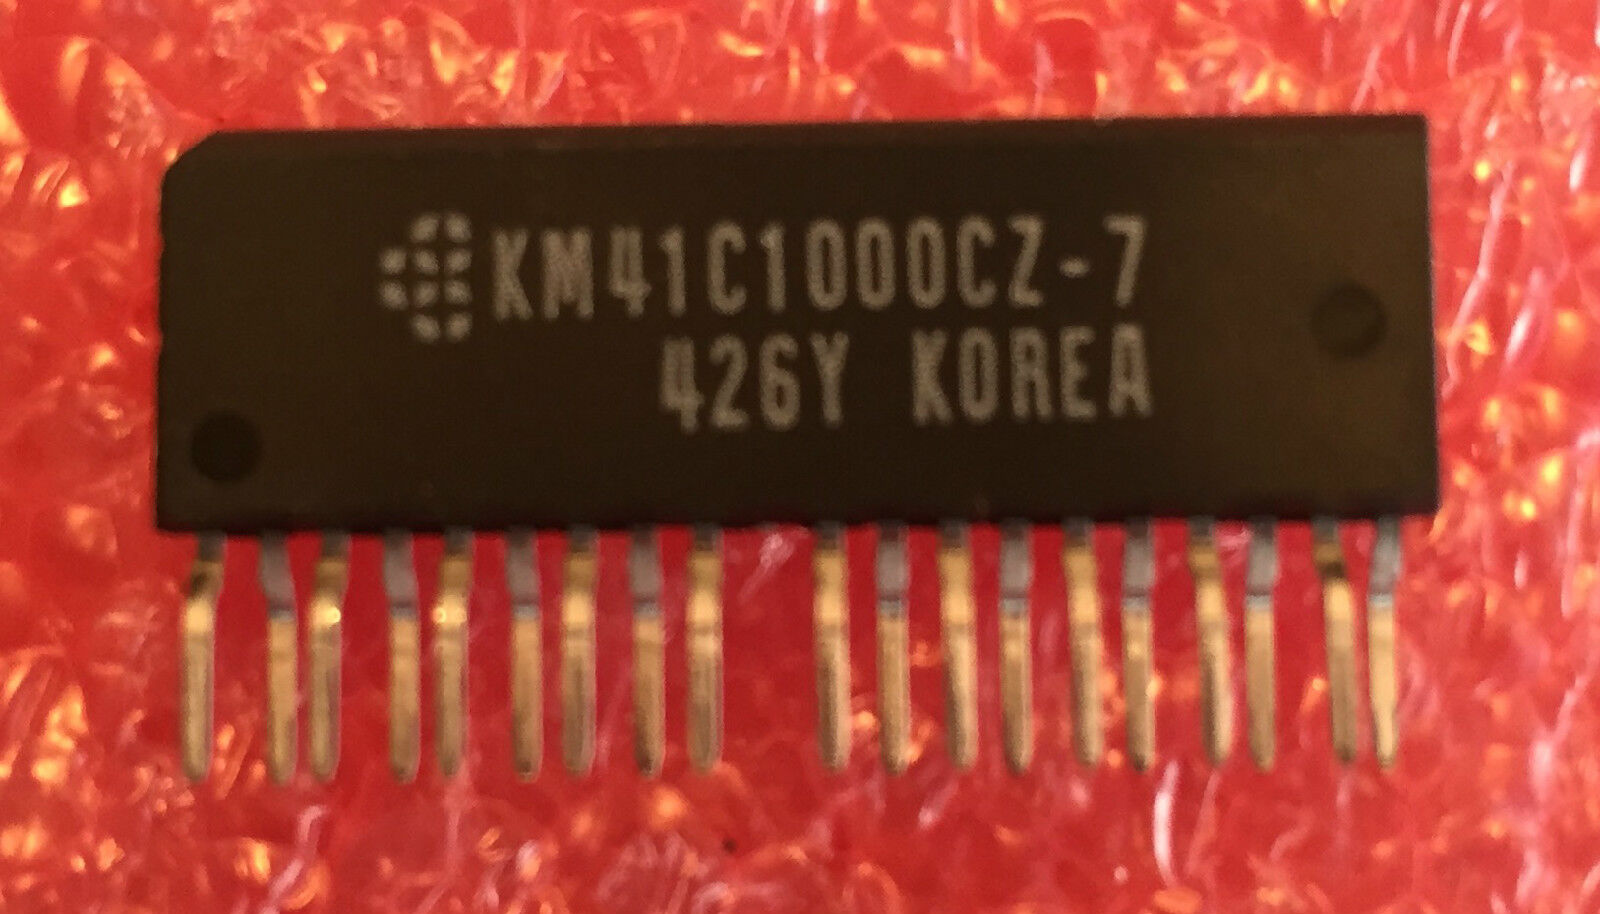 LOT OF 20 SAMSUNG KM41C1000CZ-7 1M x 1 Bit CMOS DYNAMIC RAM W/ FAST PAGE MODE